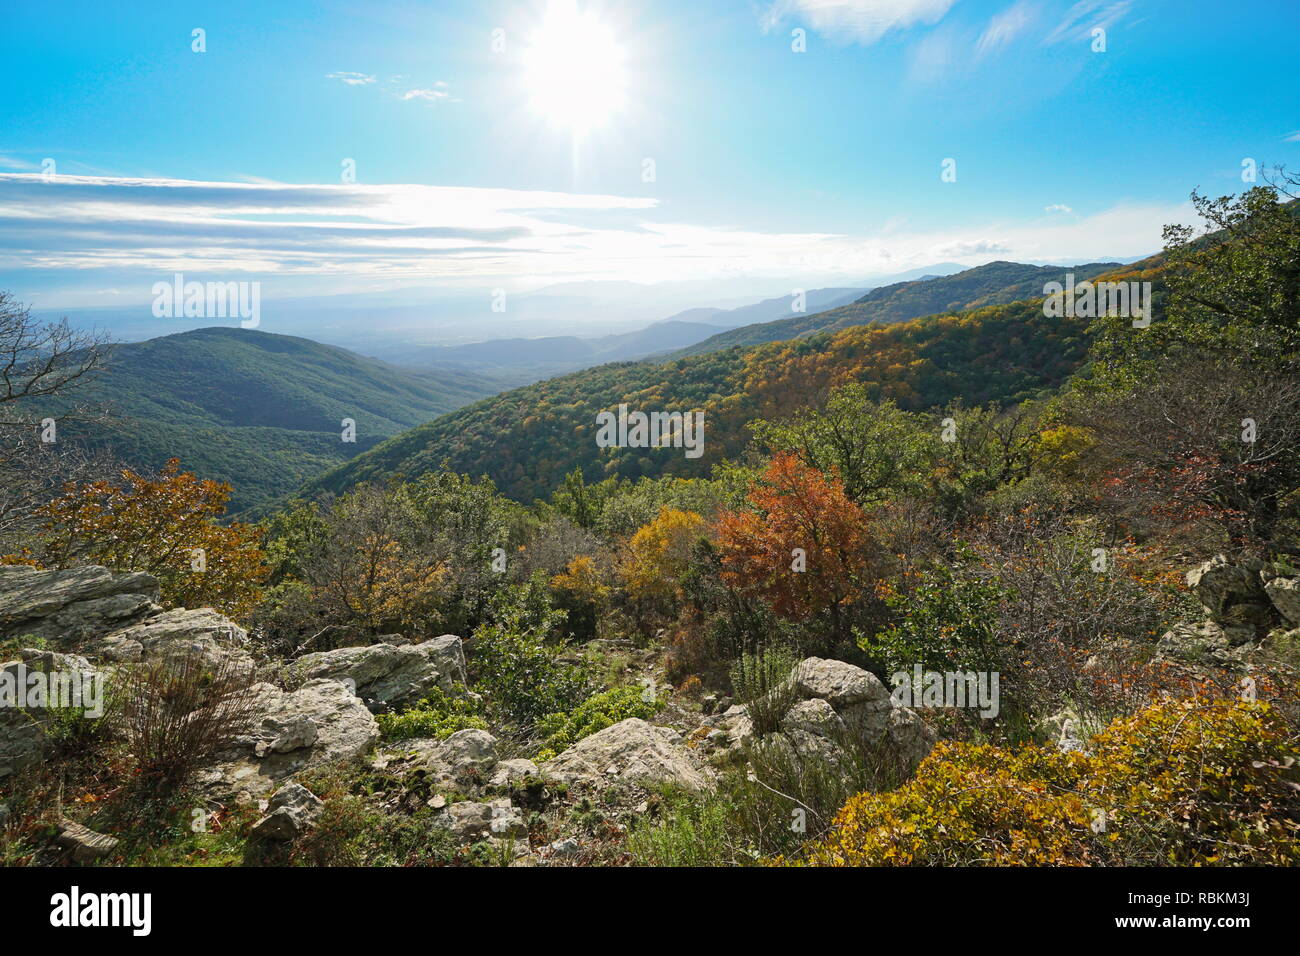 Paysage de l'Espagne à l'automne de l'Albera, Pyrénées, la Catalogne, de l'Alt Emporda Banque D'Images